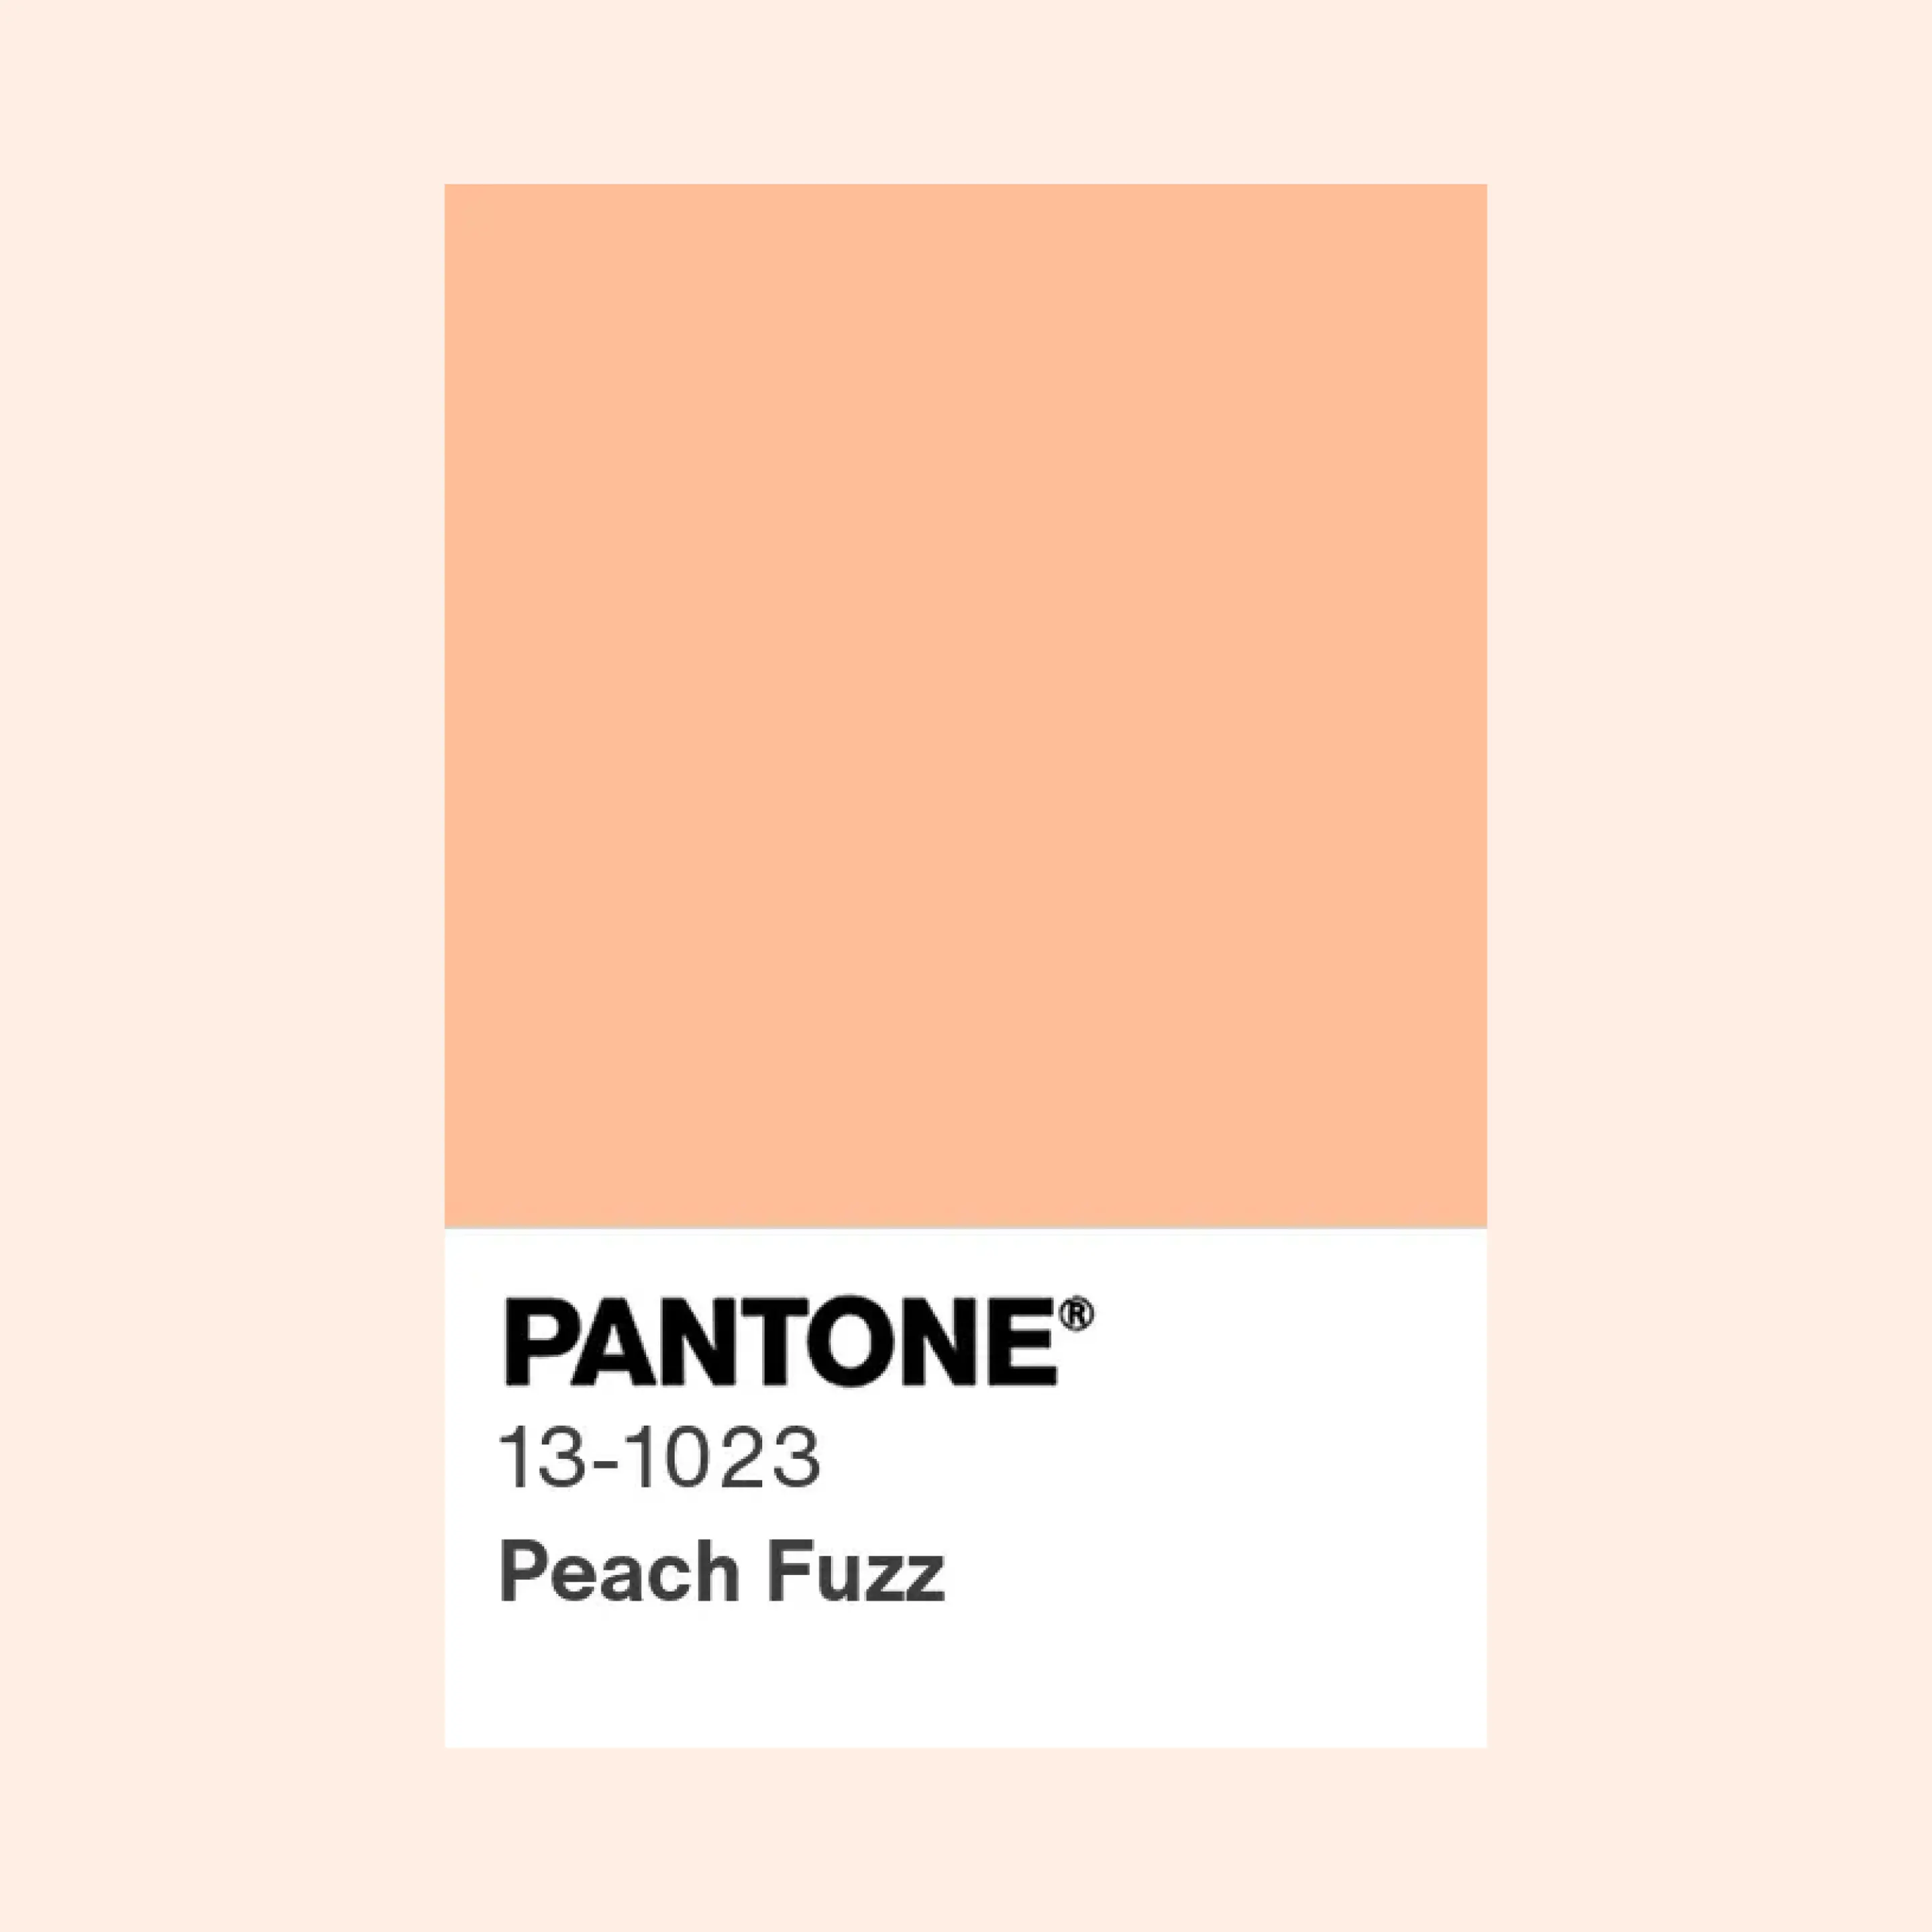 Design challenge 5. Pantone colour 2024